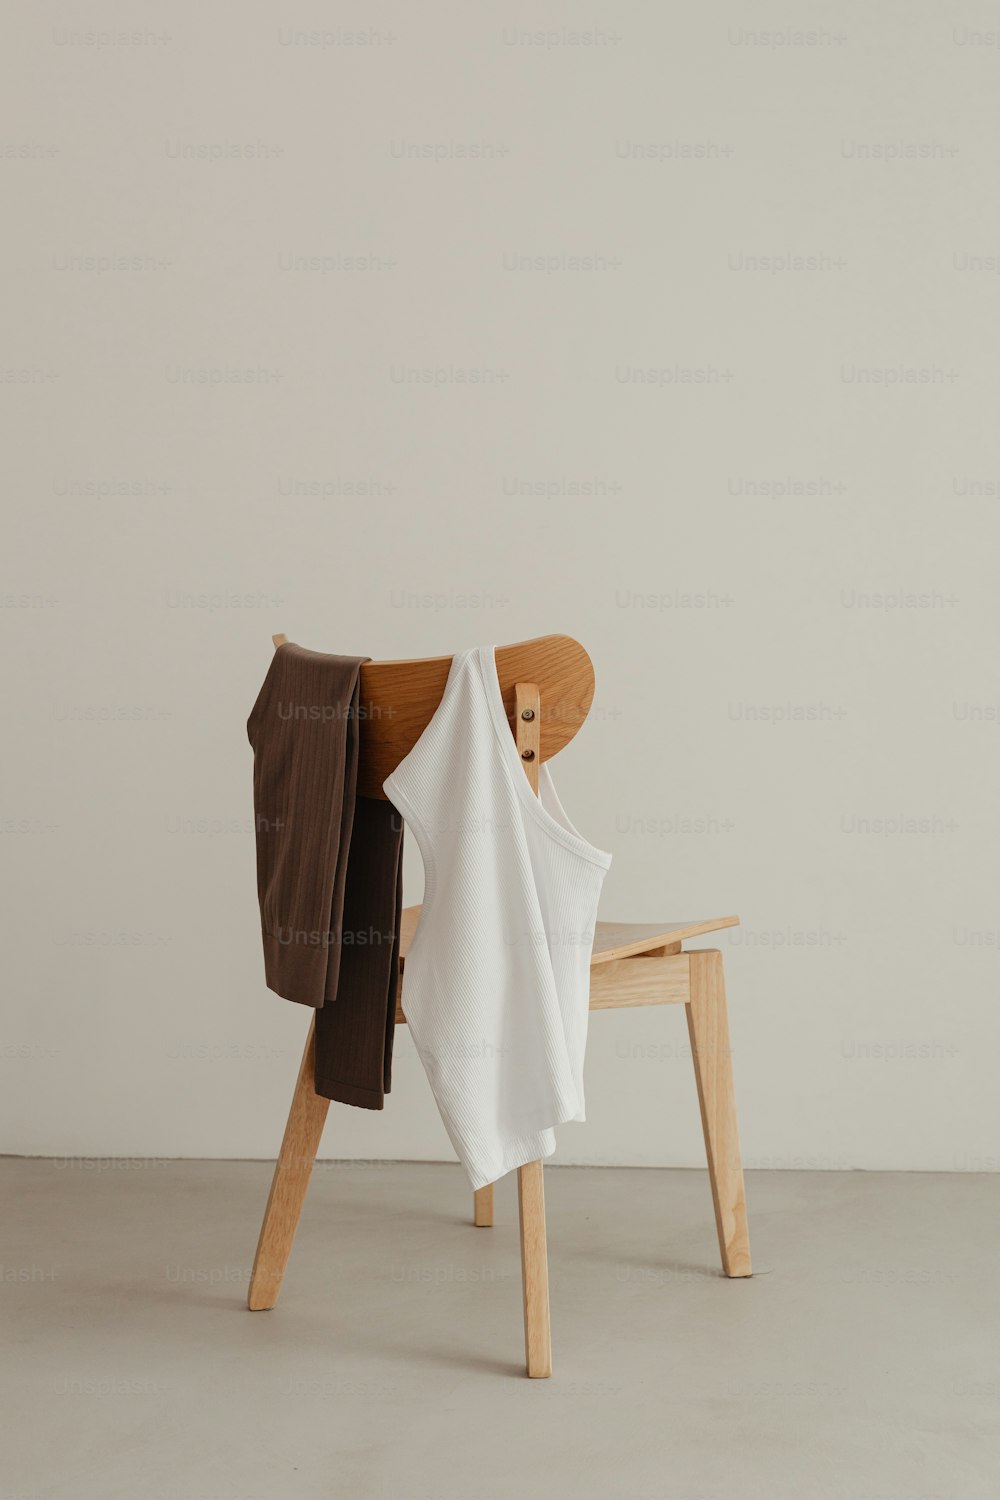 ein Holzstuhl mit einem weißen Hemd darauf